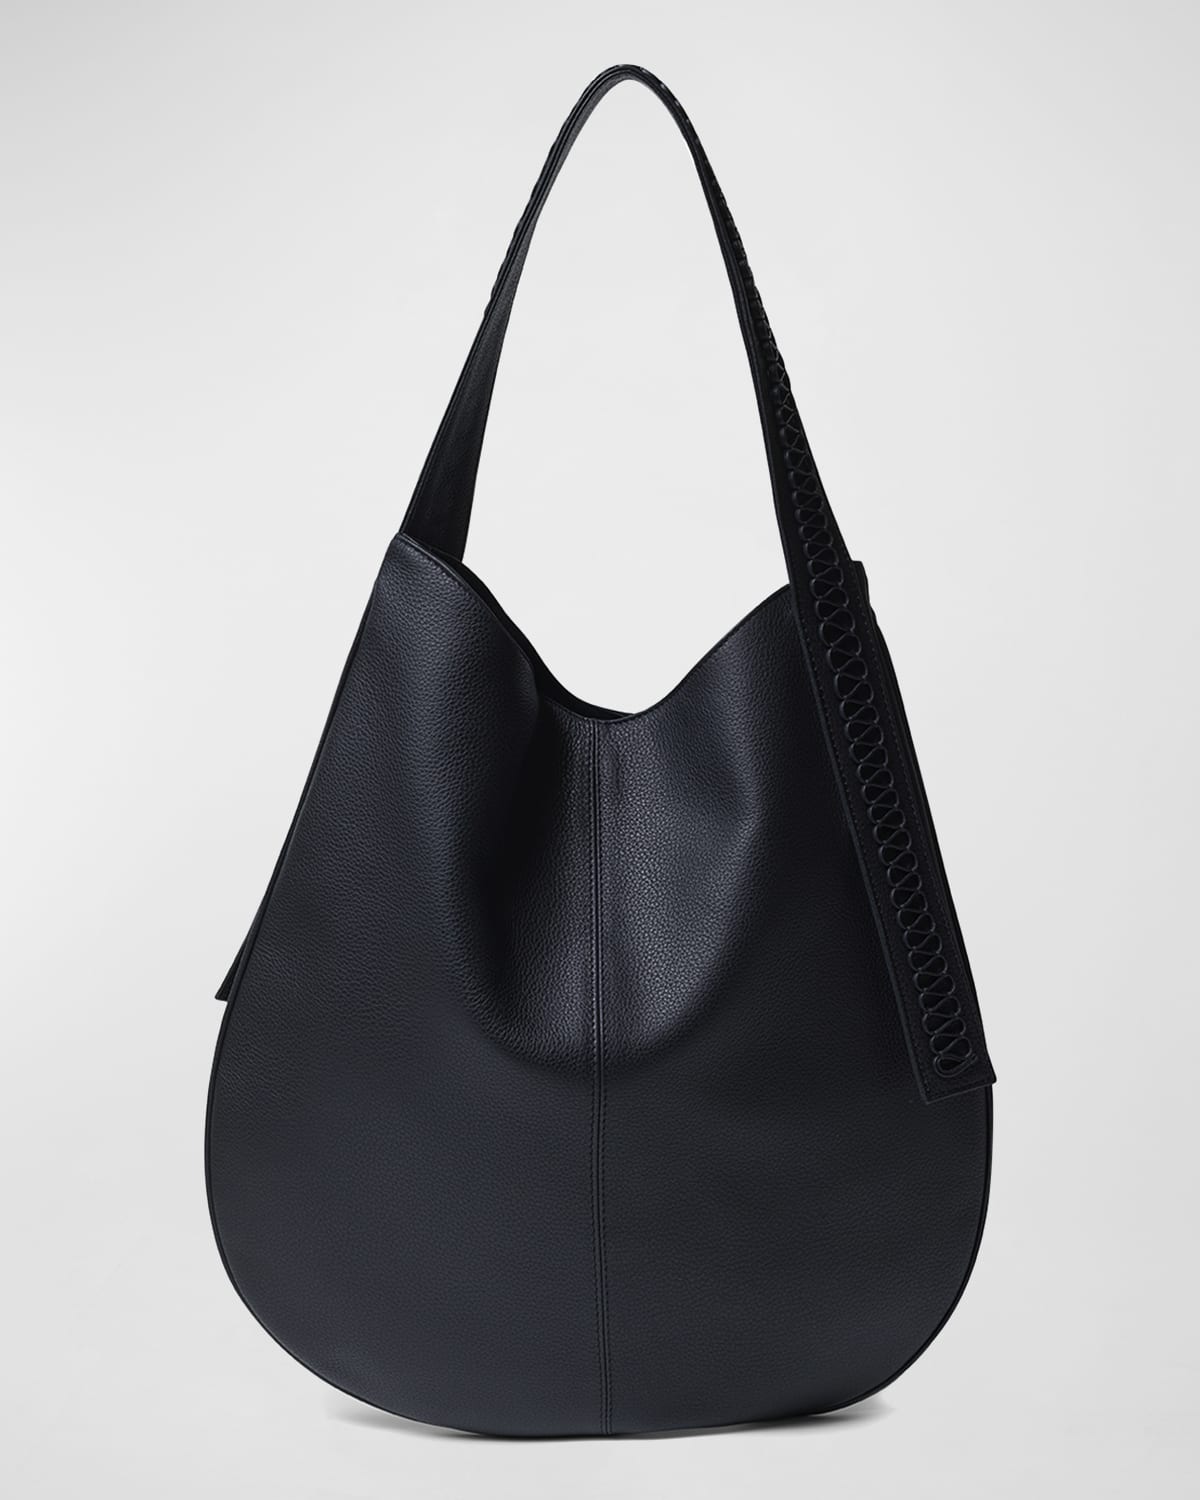 Callista Iconic Calypso Hobo Bag In Black